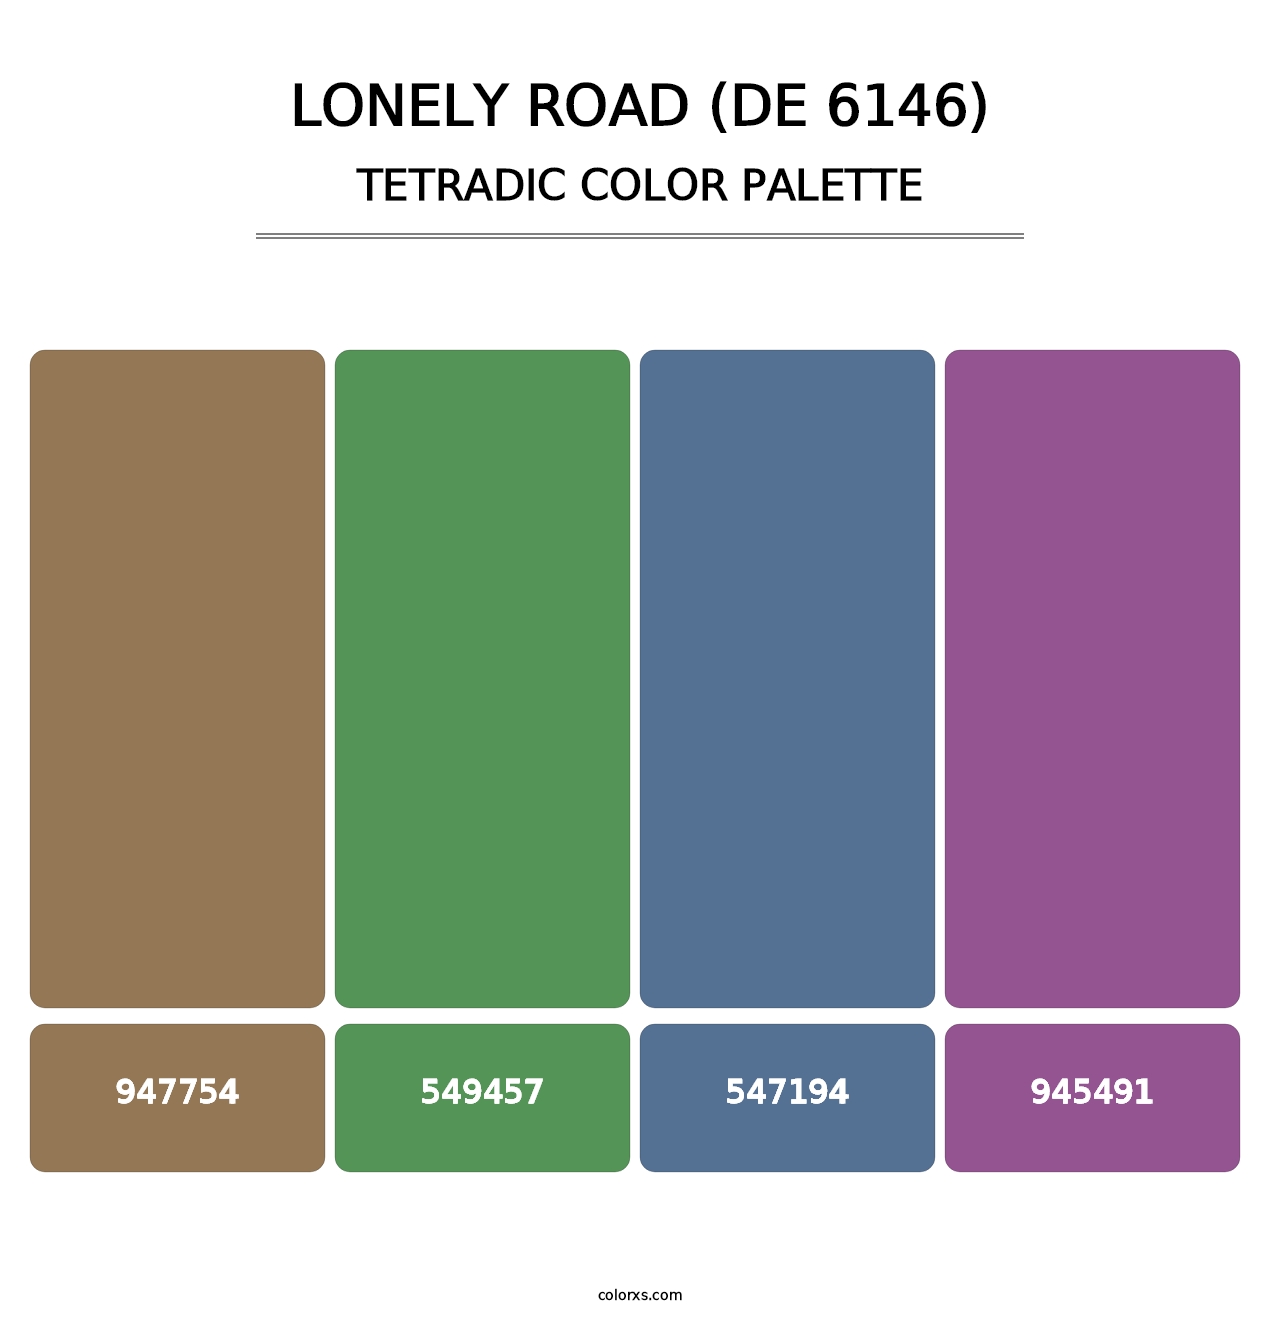 Lonely Road (DE 6146) - Tetradic Color Palette